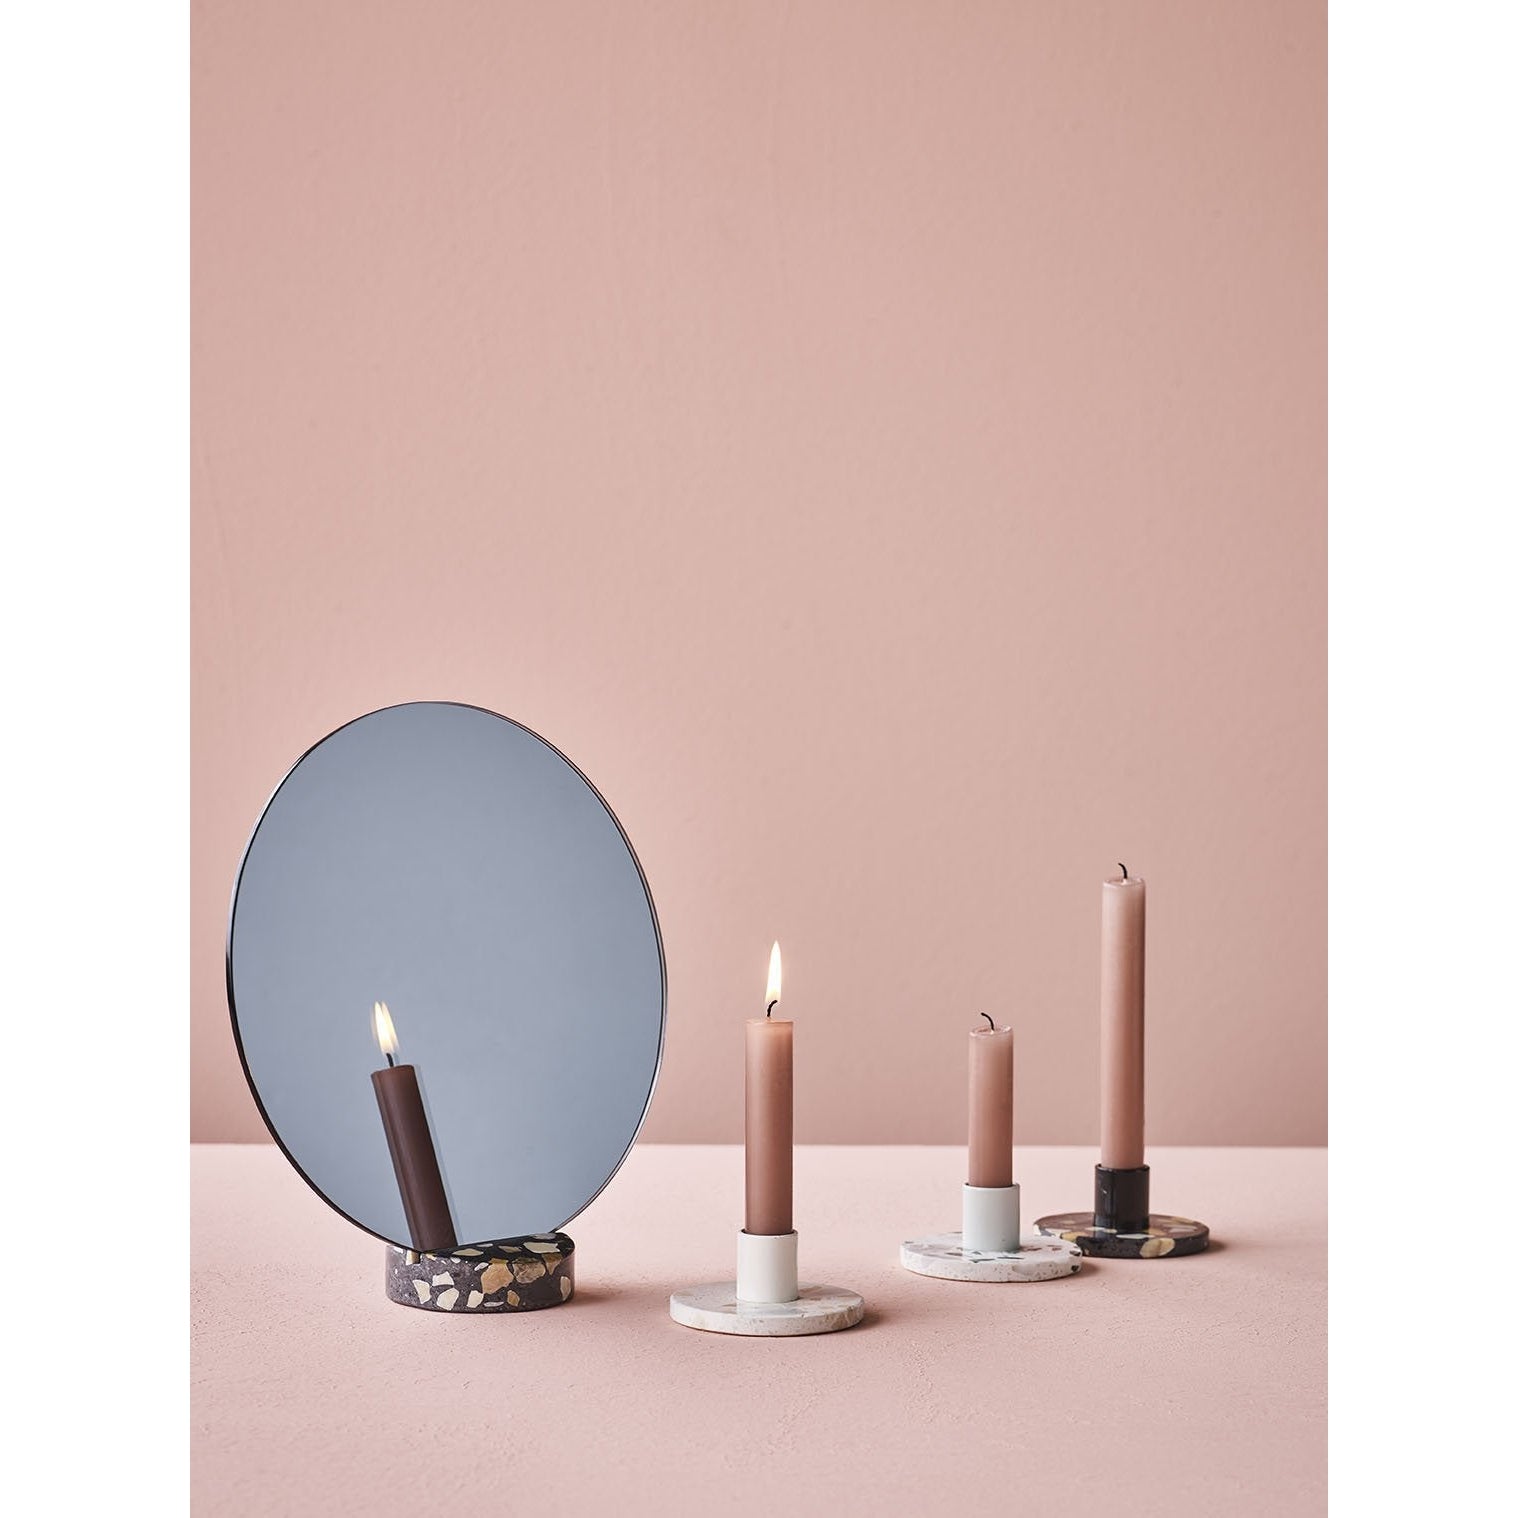 Lucie Kaas Erat spegel rosa, 25 cm